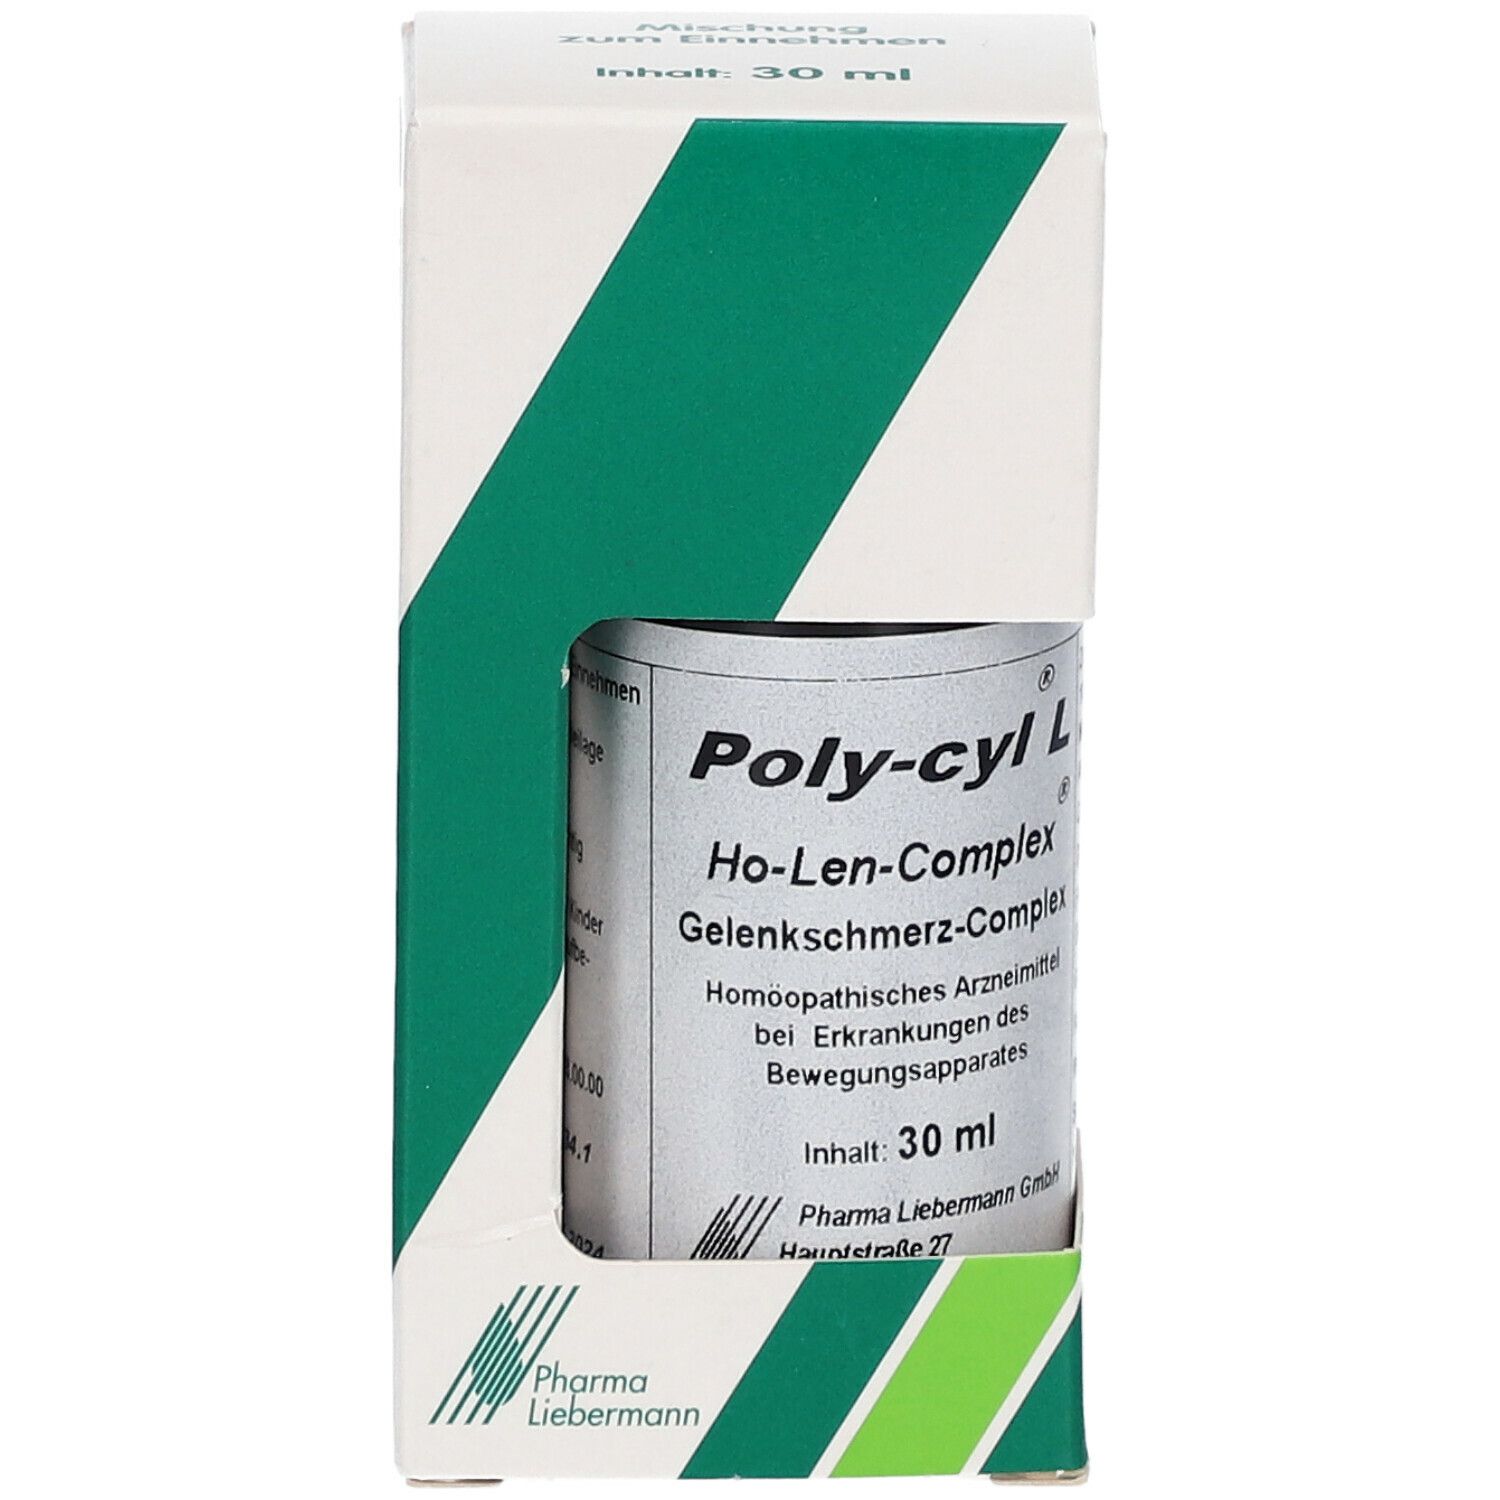 Poly-cyl® L Gelenkschmerz-Complex Tropfen